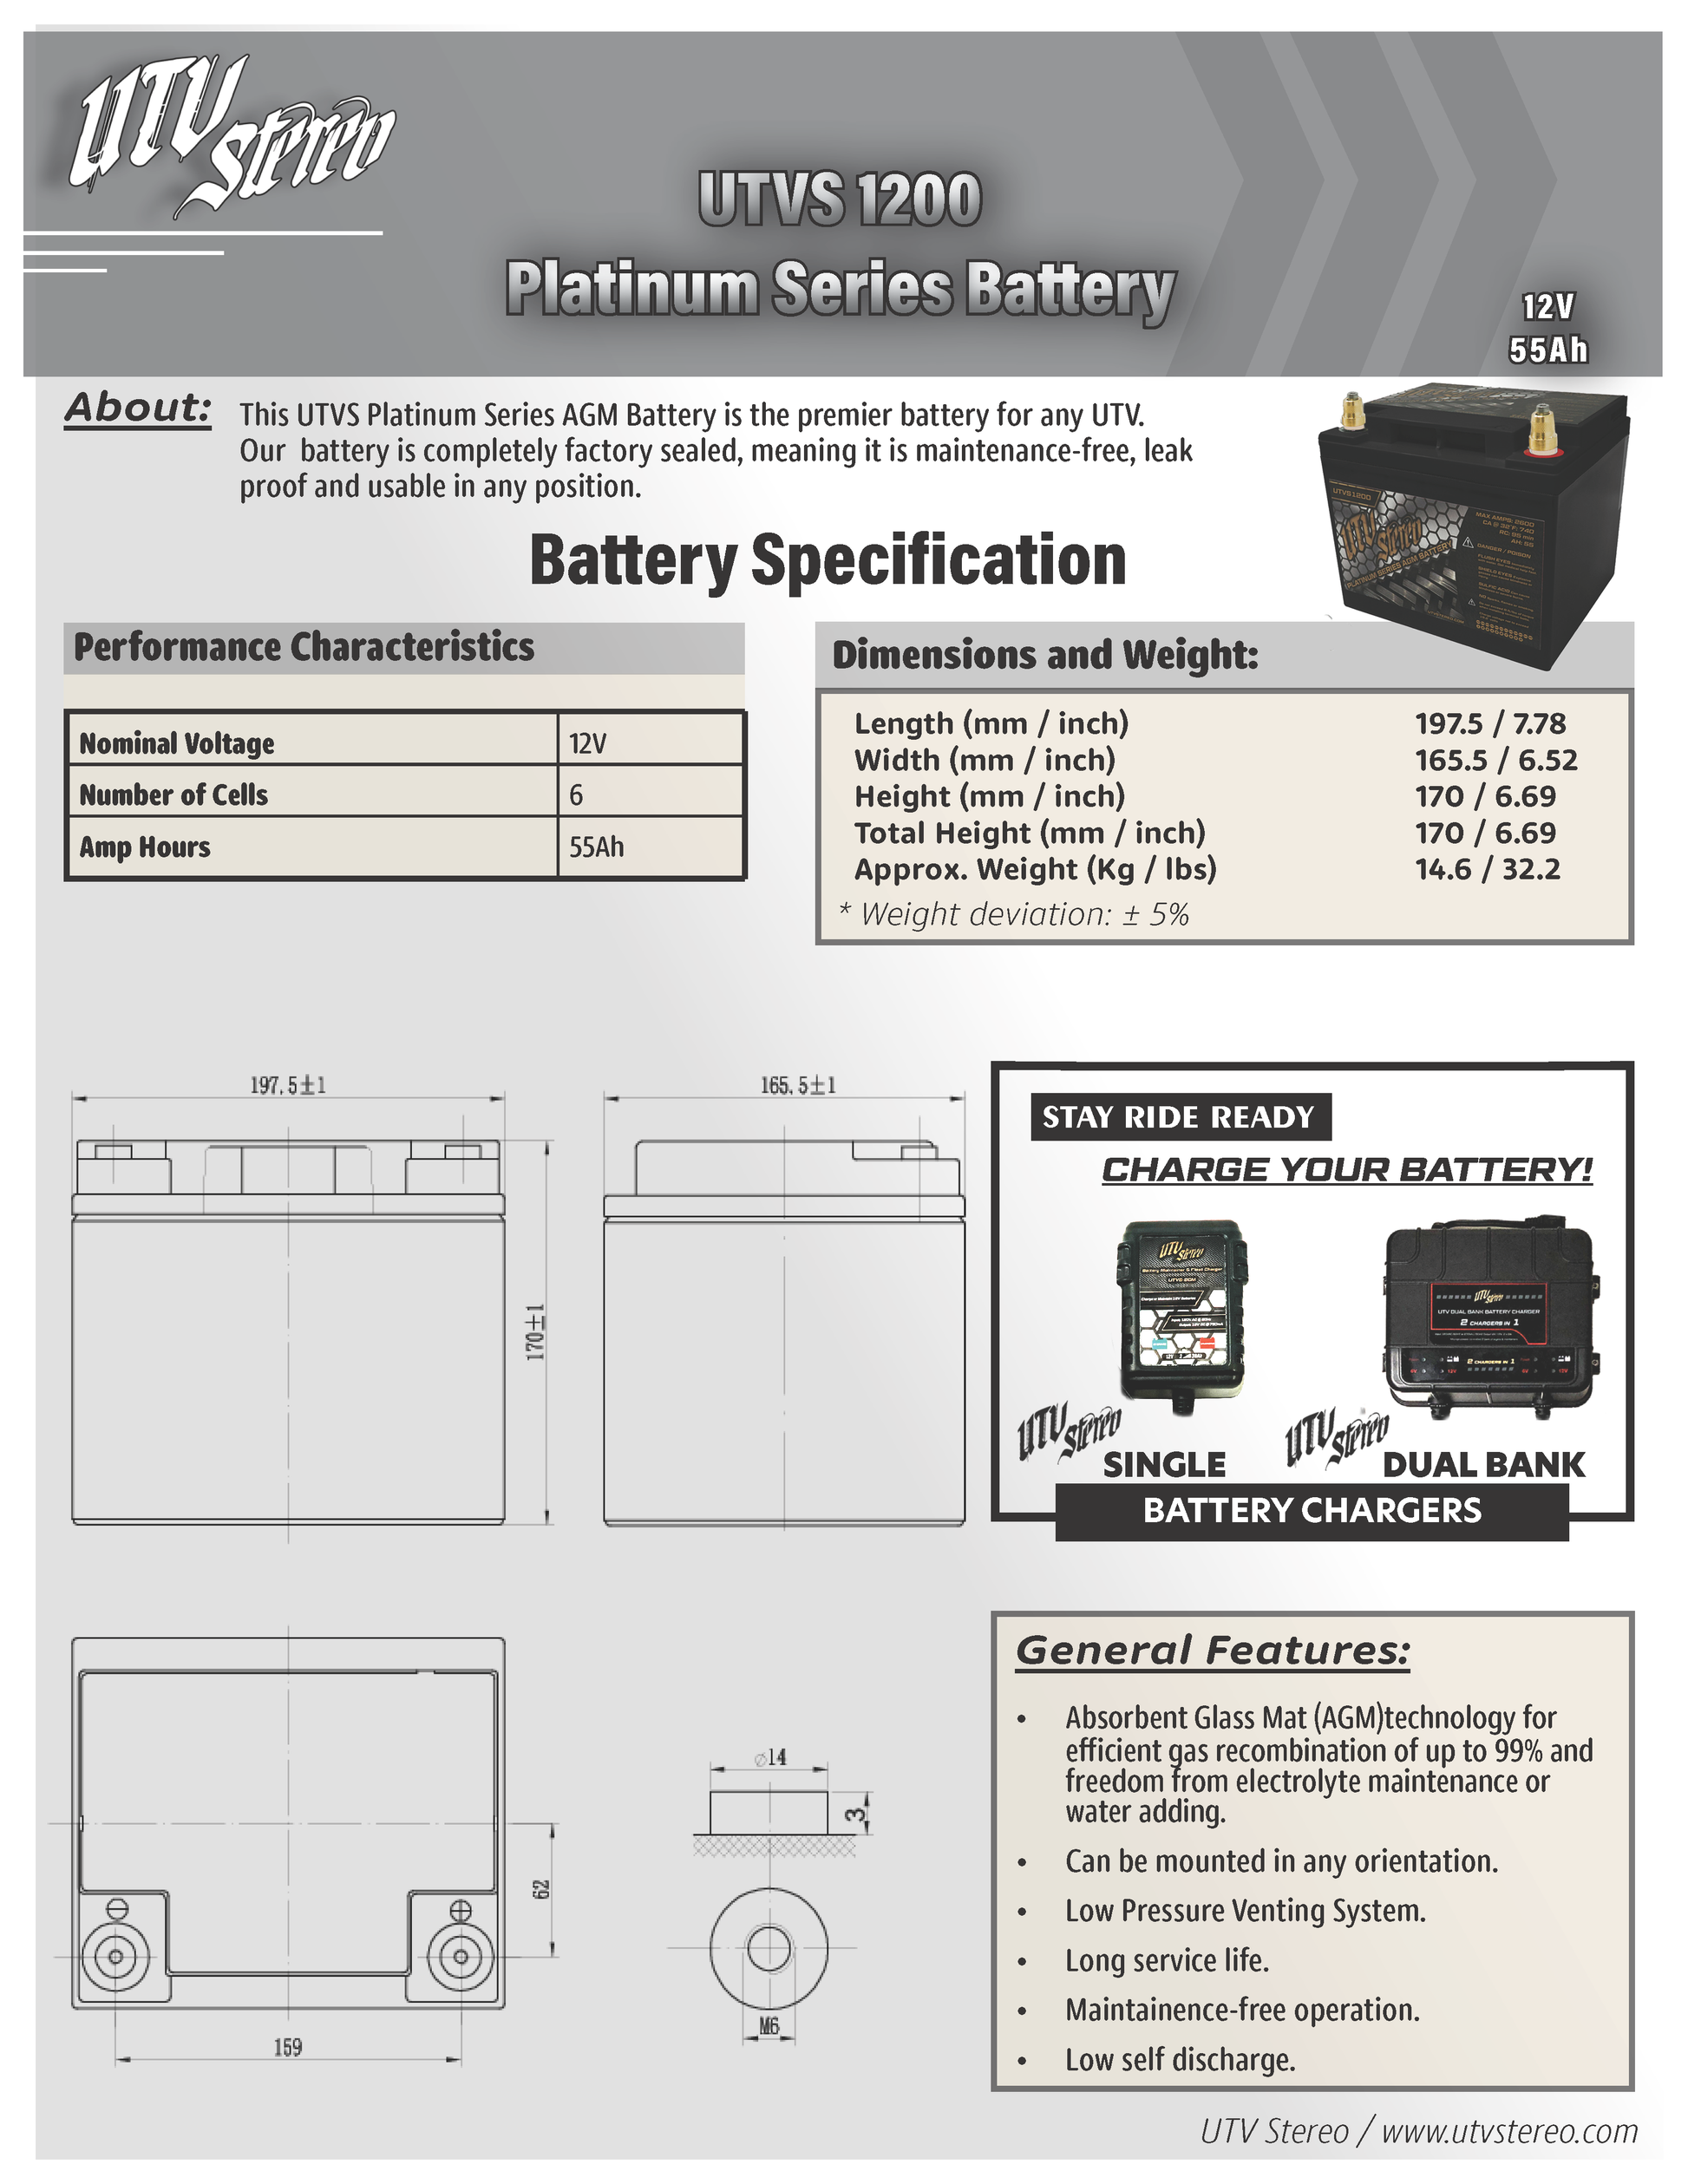 UTVS1200 UTV Stereo Platinum Series AGM Battery